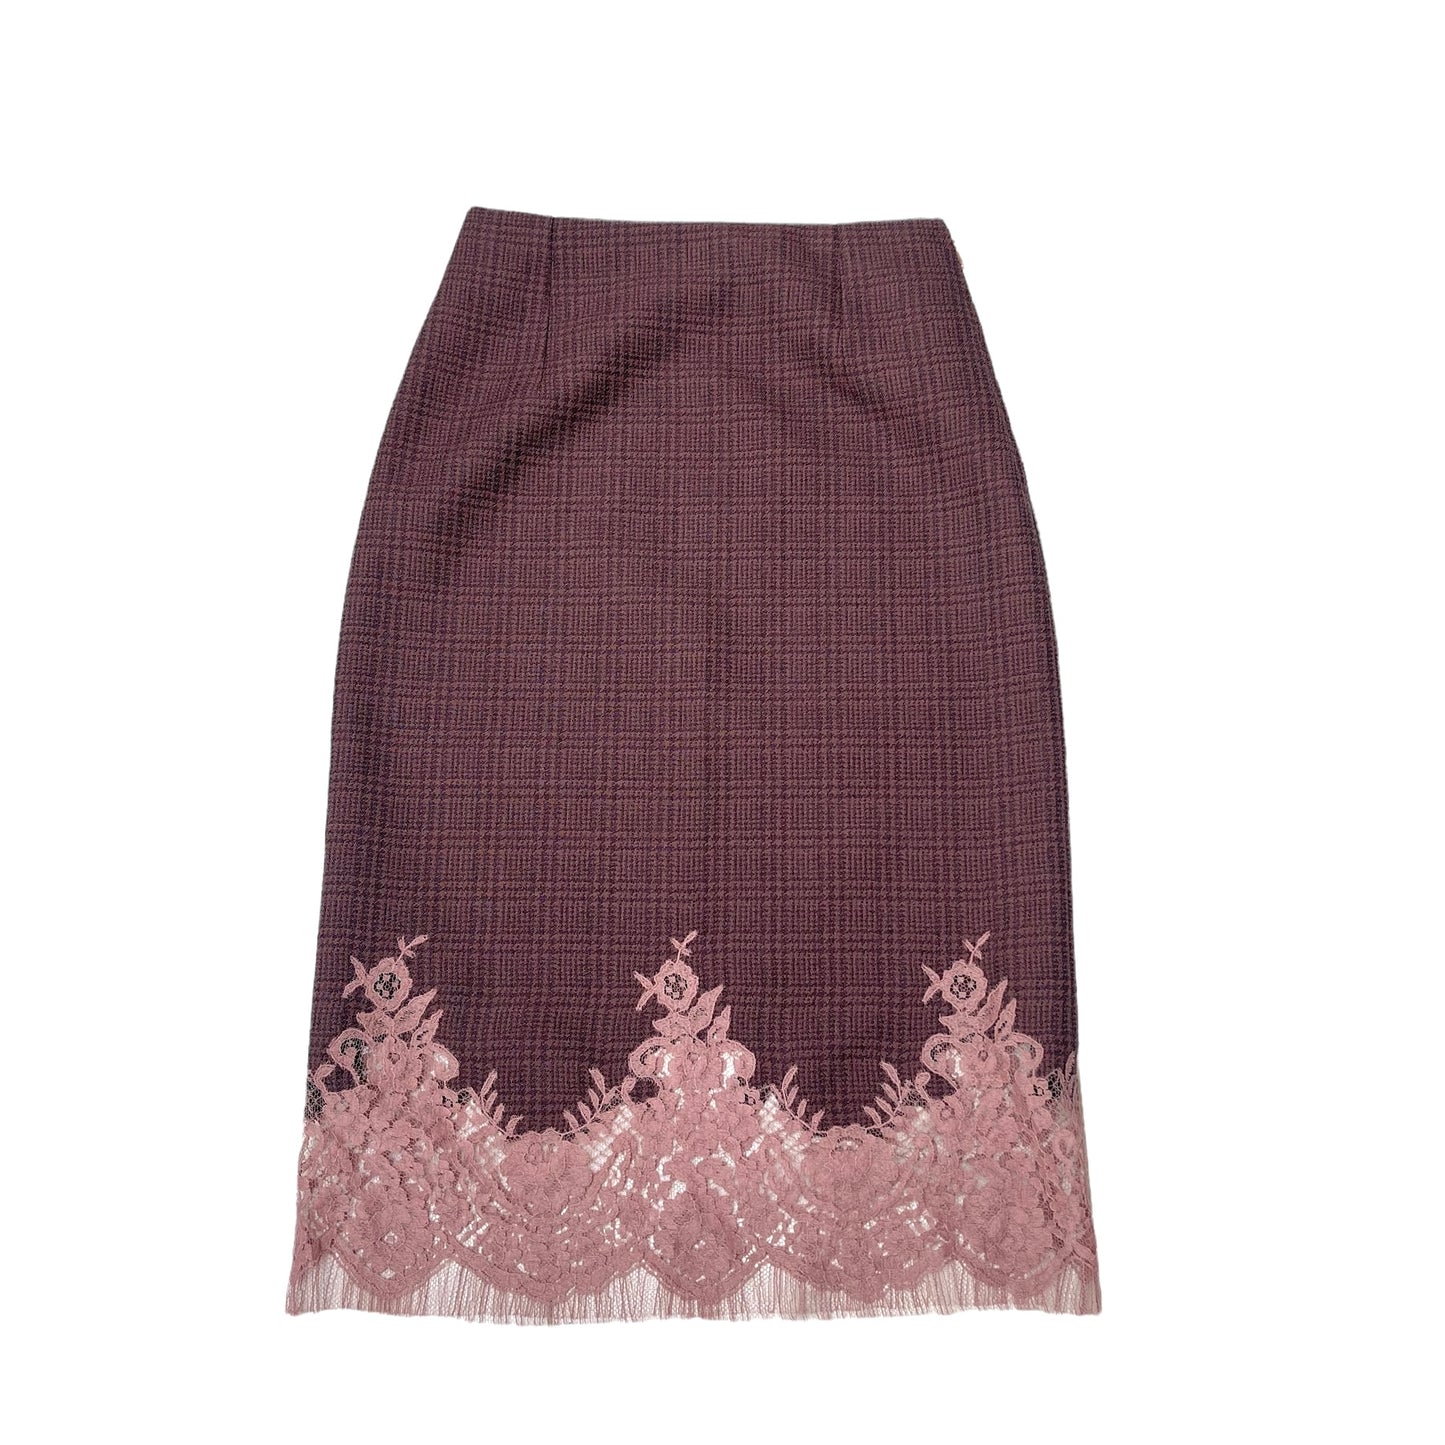 Burgundy Checker Skirt - S